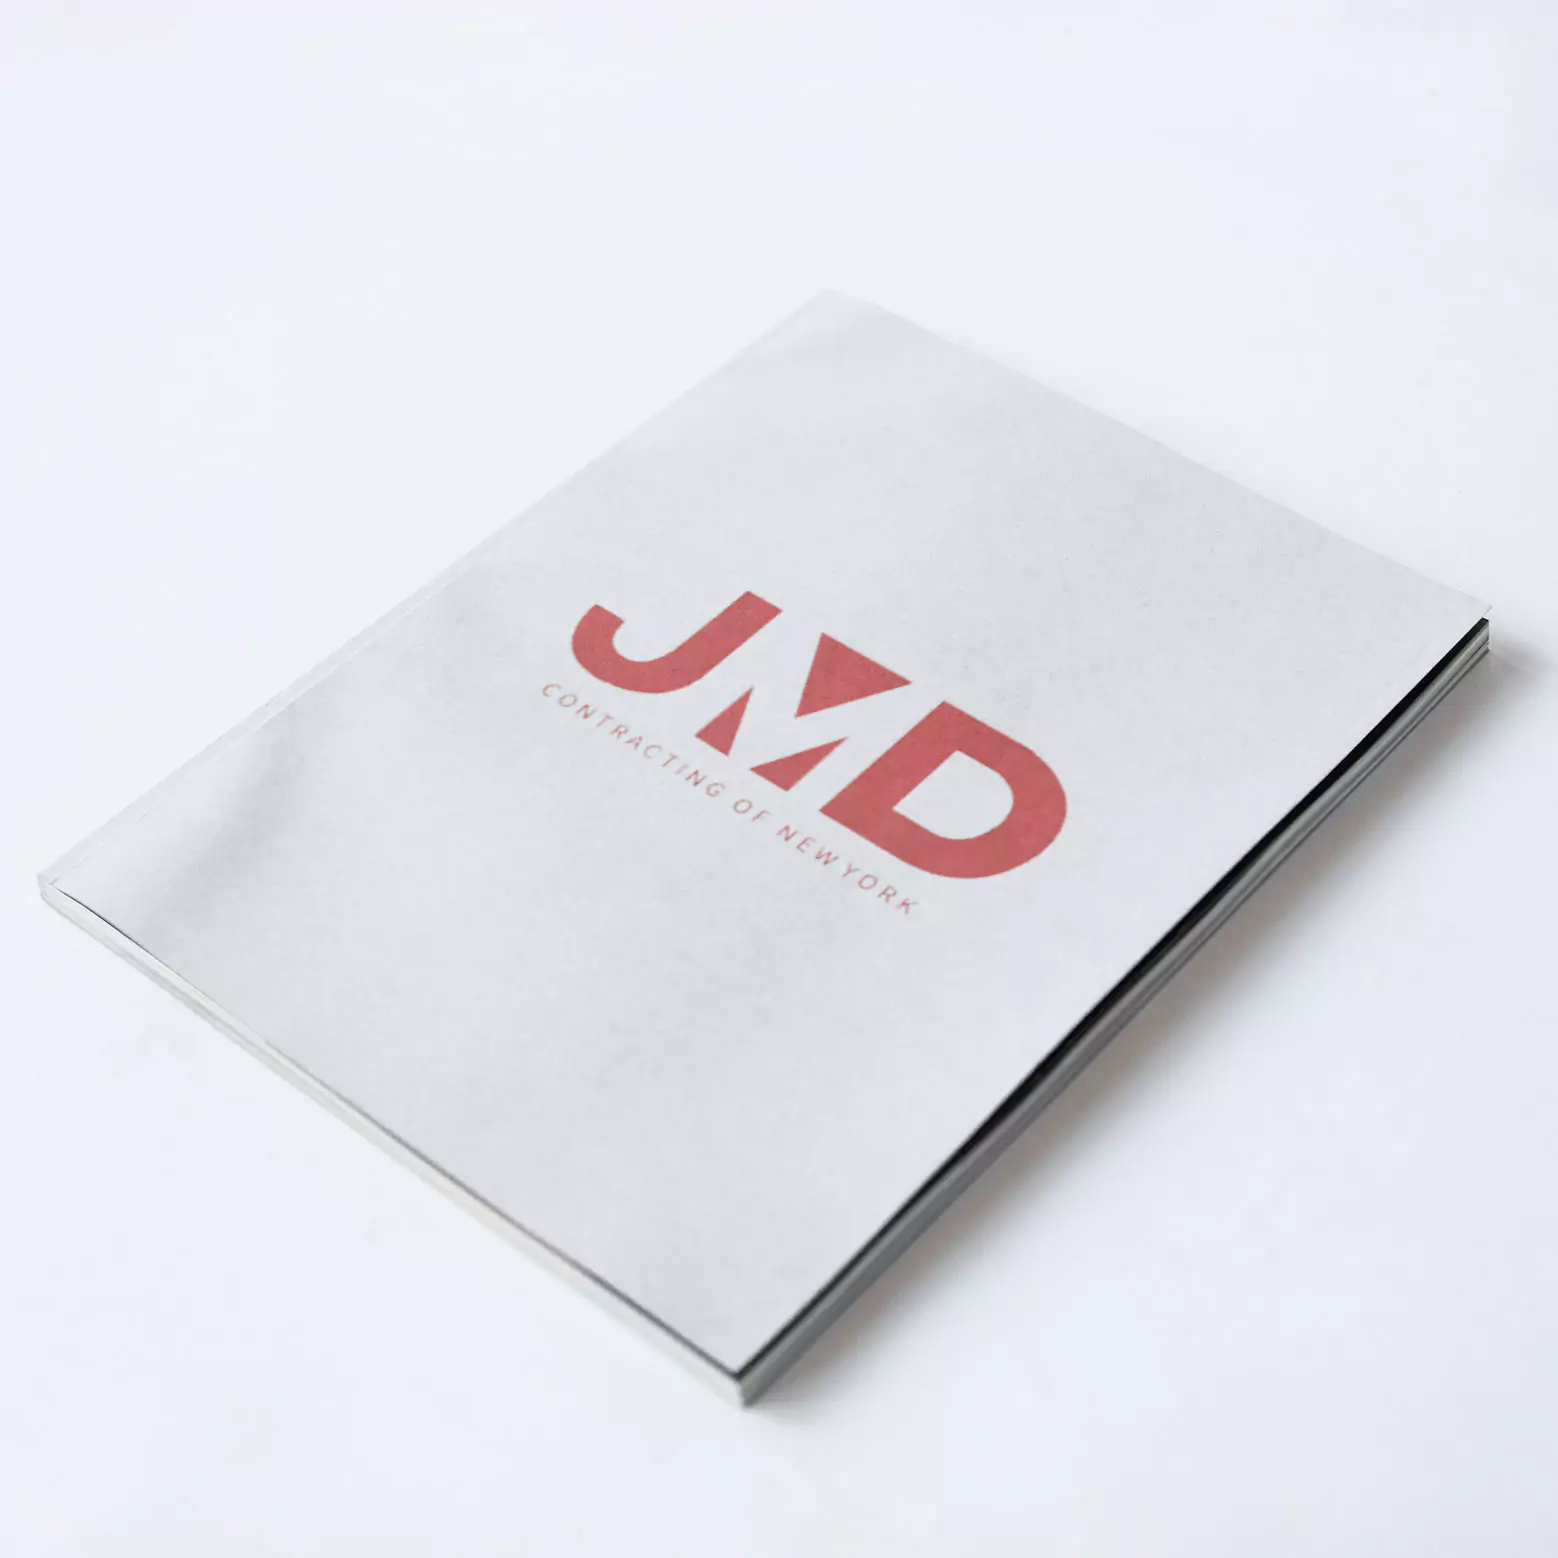 motionmonsters-logo-design-branding-design-mockup-design-newyork-newjersey-jmd